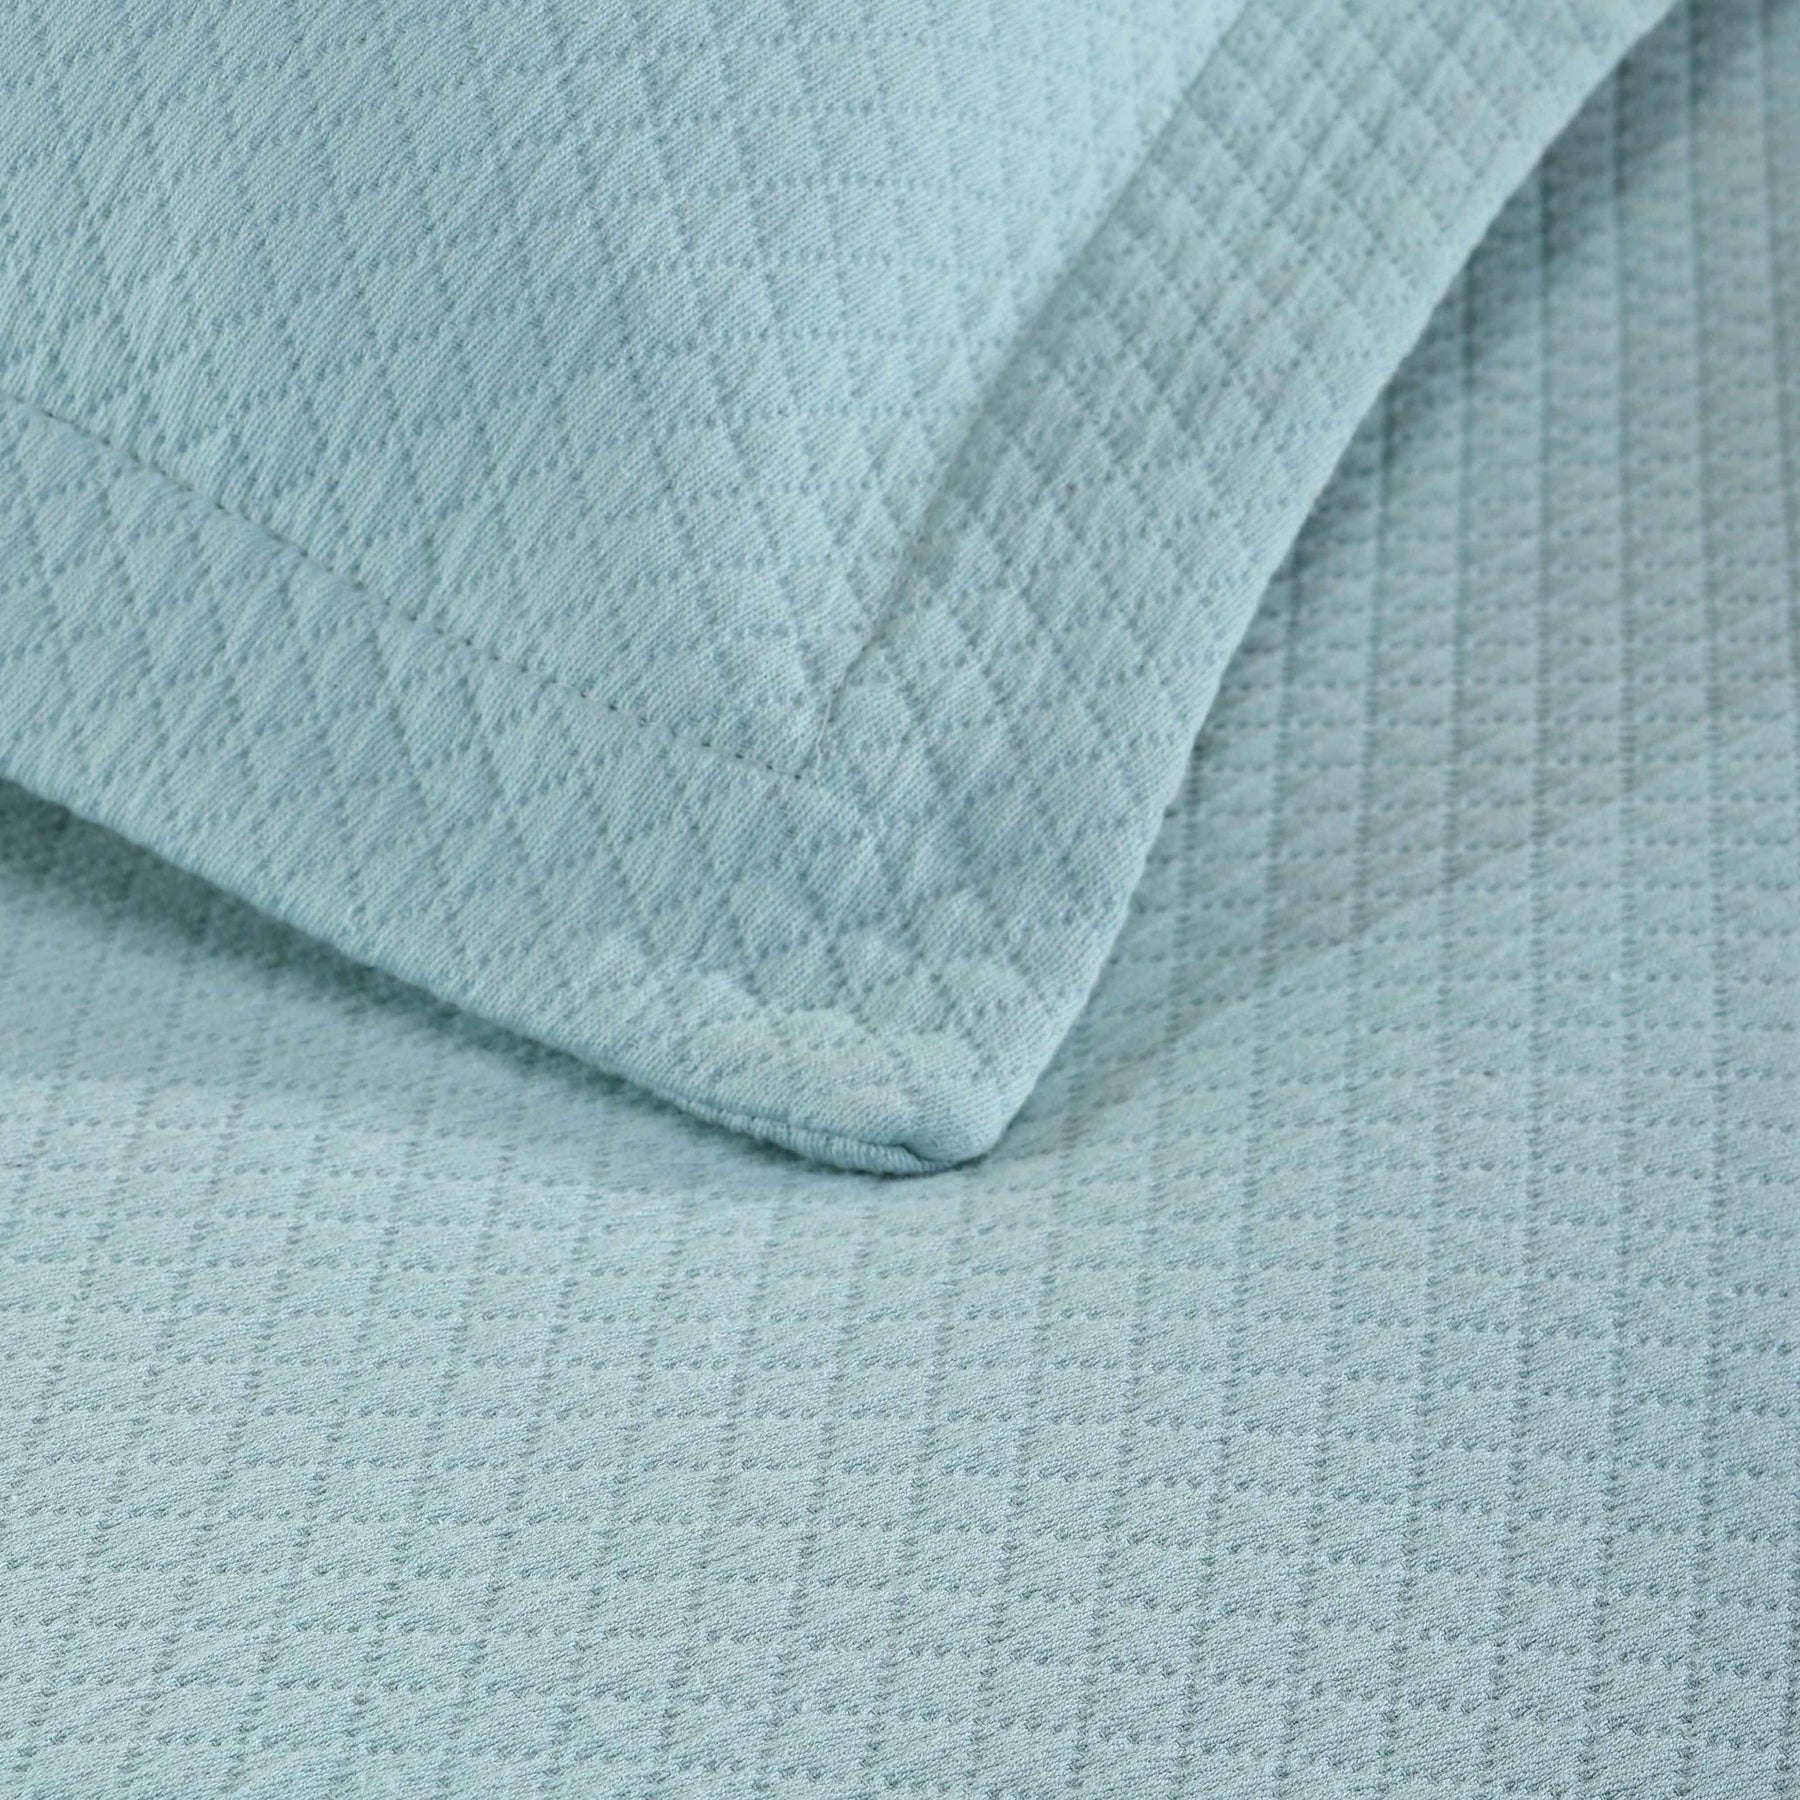 Solitaire Jacquard Matelassé Cotton Diamond Solitaire Bedspread Set - Aqua